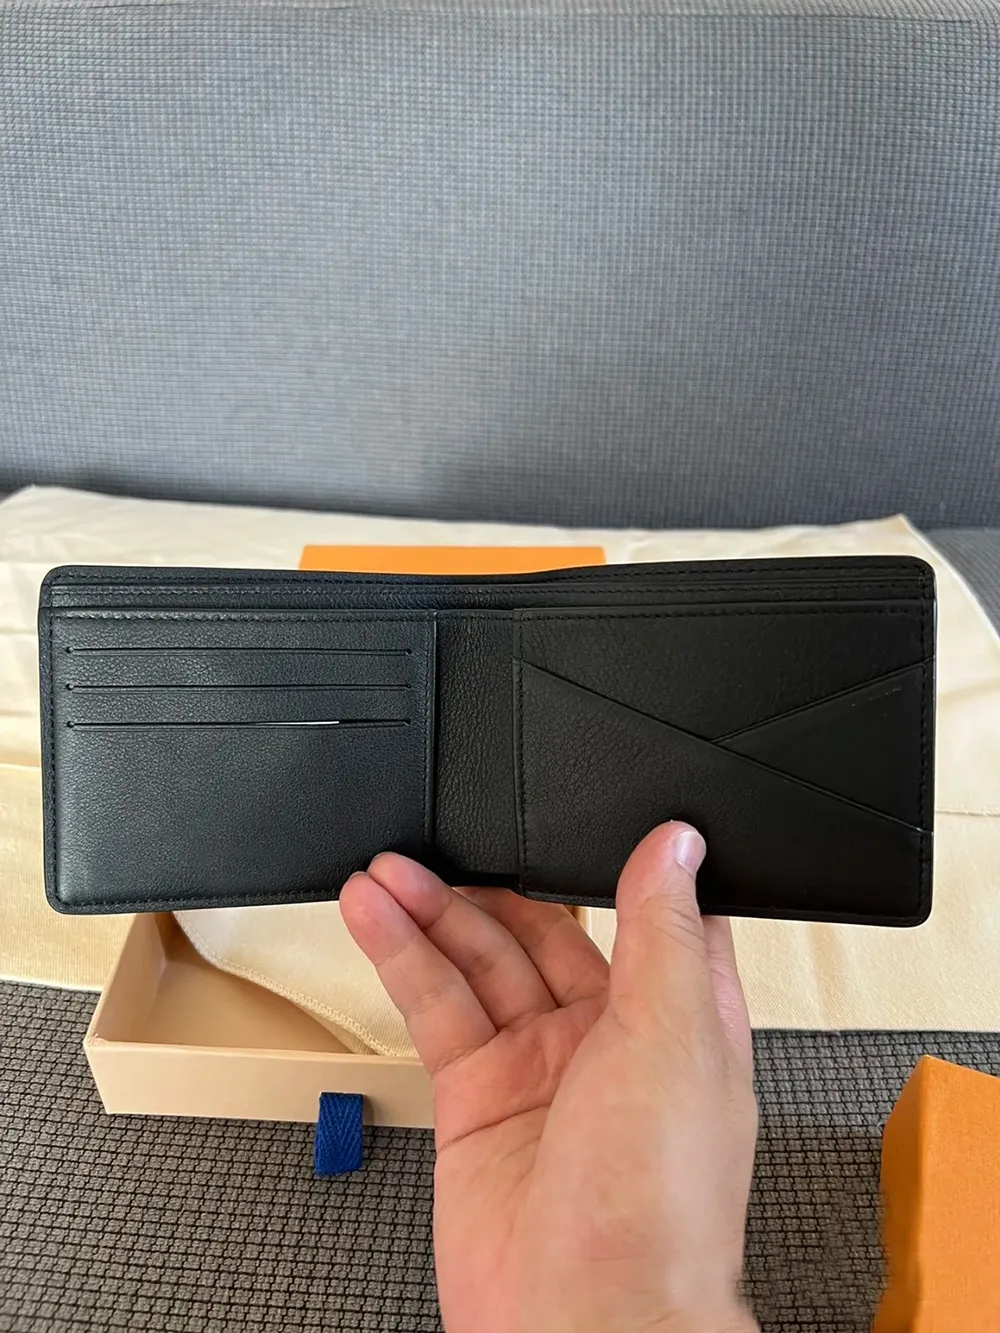 メンズカウハイド財布スターリングクリップウォレットダラークリップウォレットパリデザイナークレジットカードホルダー本革IDケースファッションコイン財布ギフト折りたたみが箱が付いています